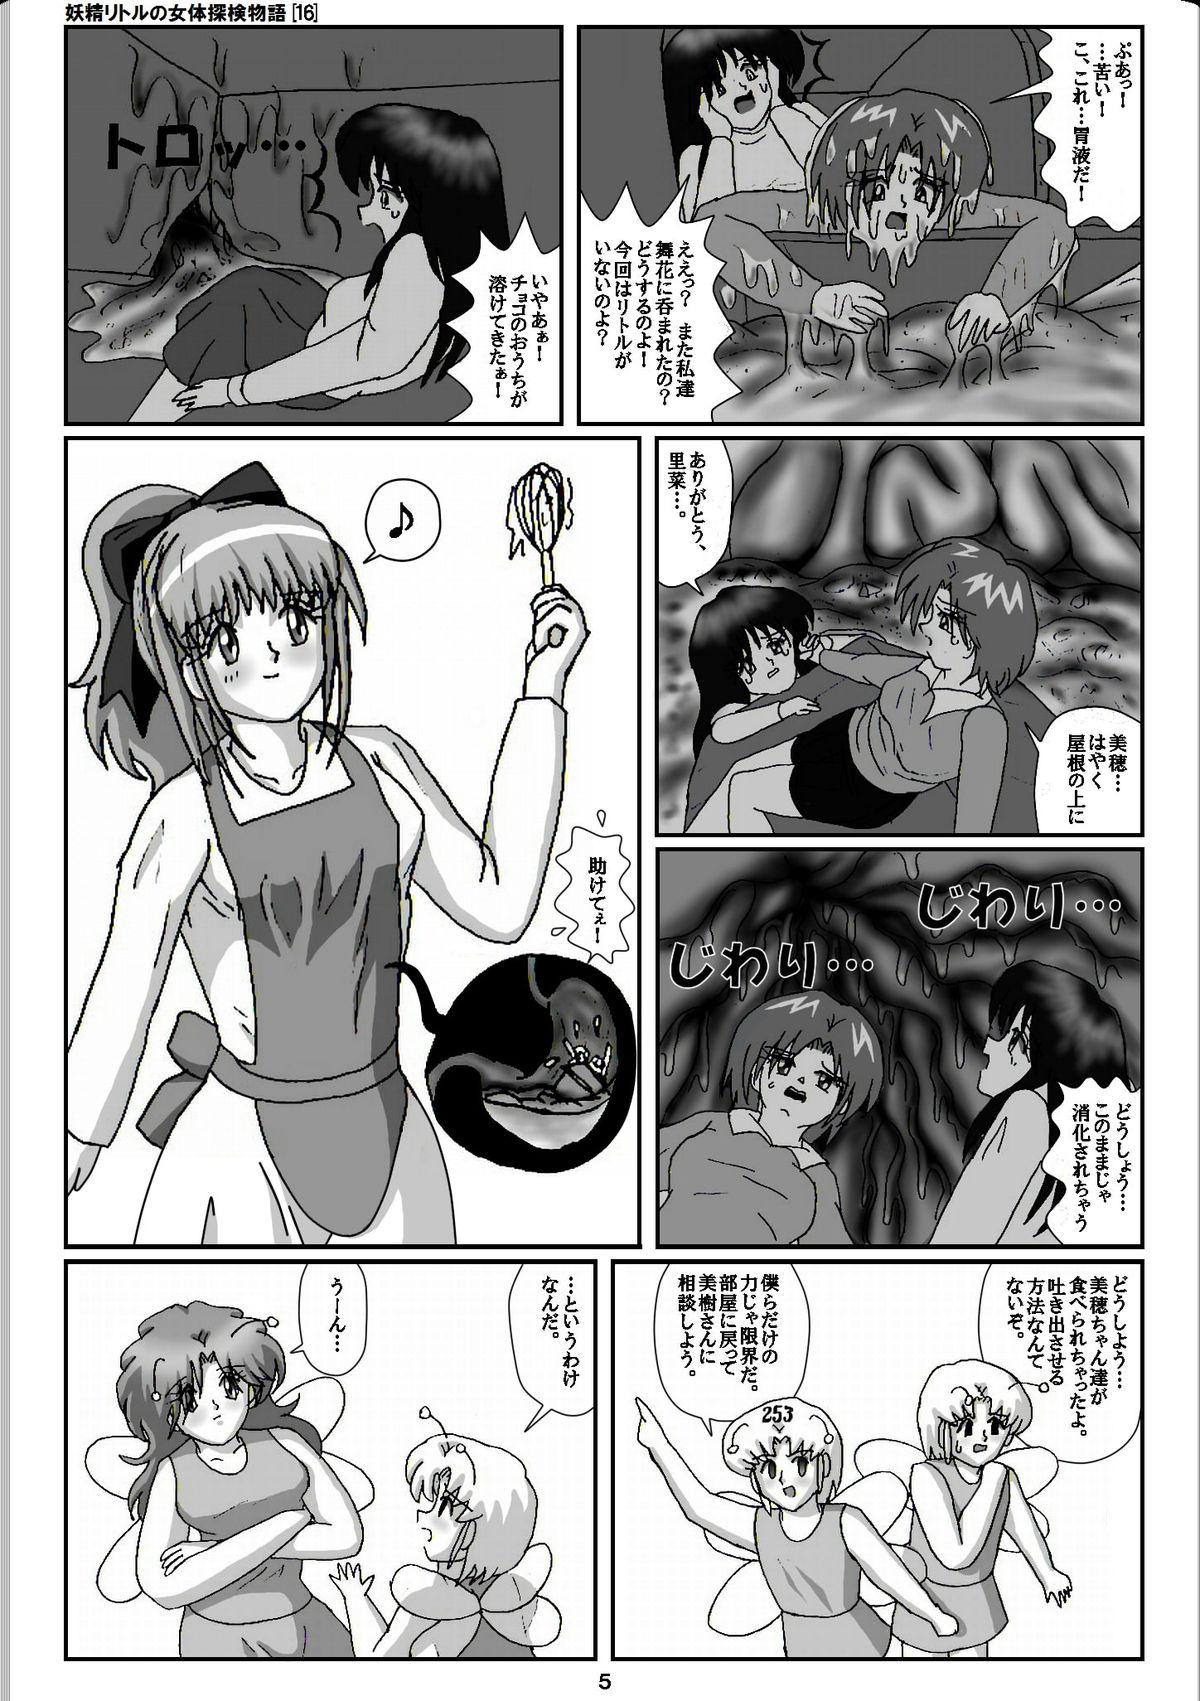 Vagina Yousei Little no Nyotai Tanken Monogatari Gets - Page 5